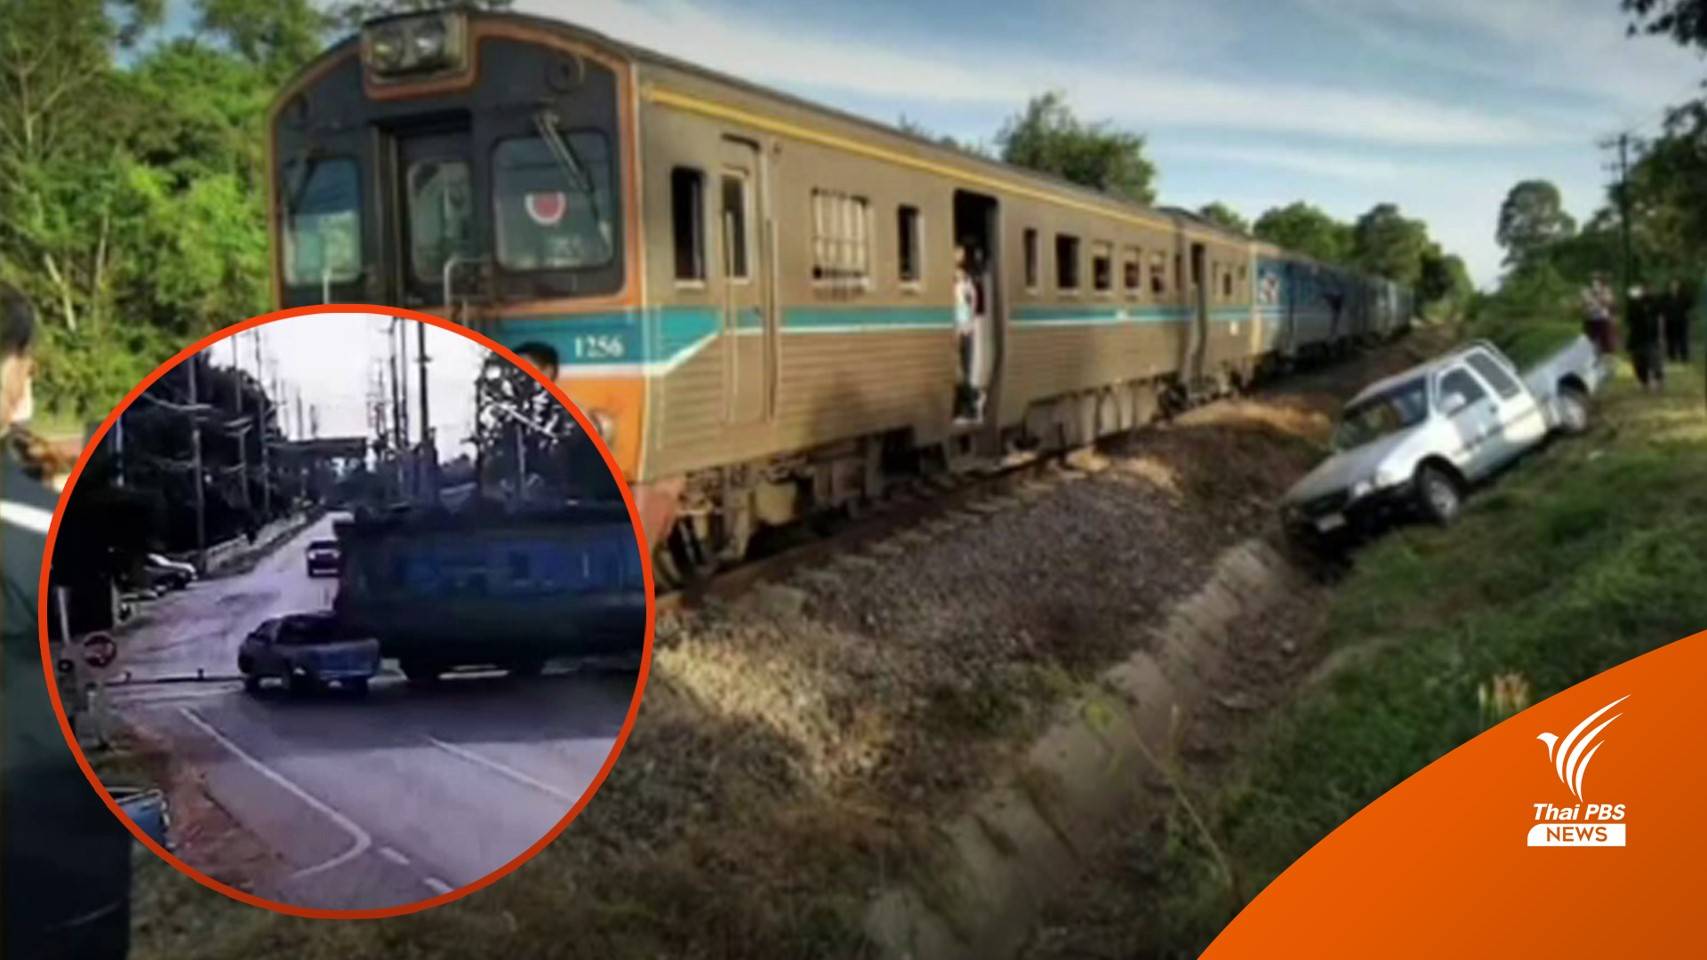 การรถไฟฯ เผยนาทีกระบะฝ่าไม้กั้น ถูกรถไฟชน ตาย 1 เจ็บ 1